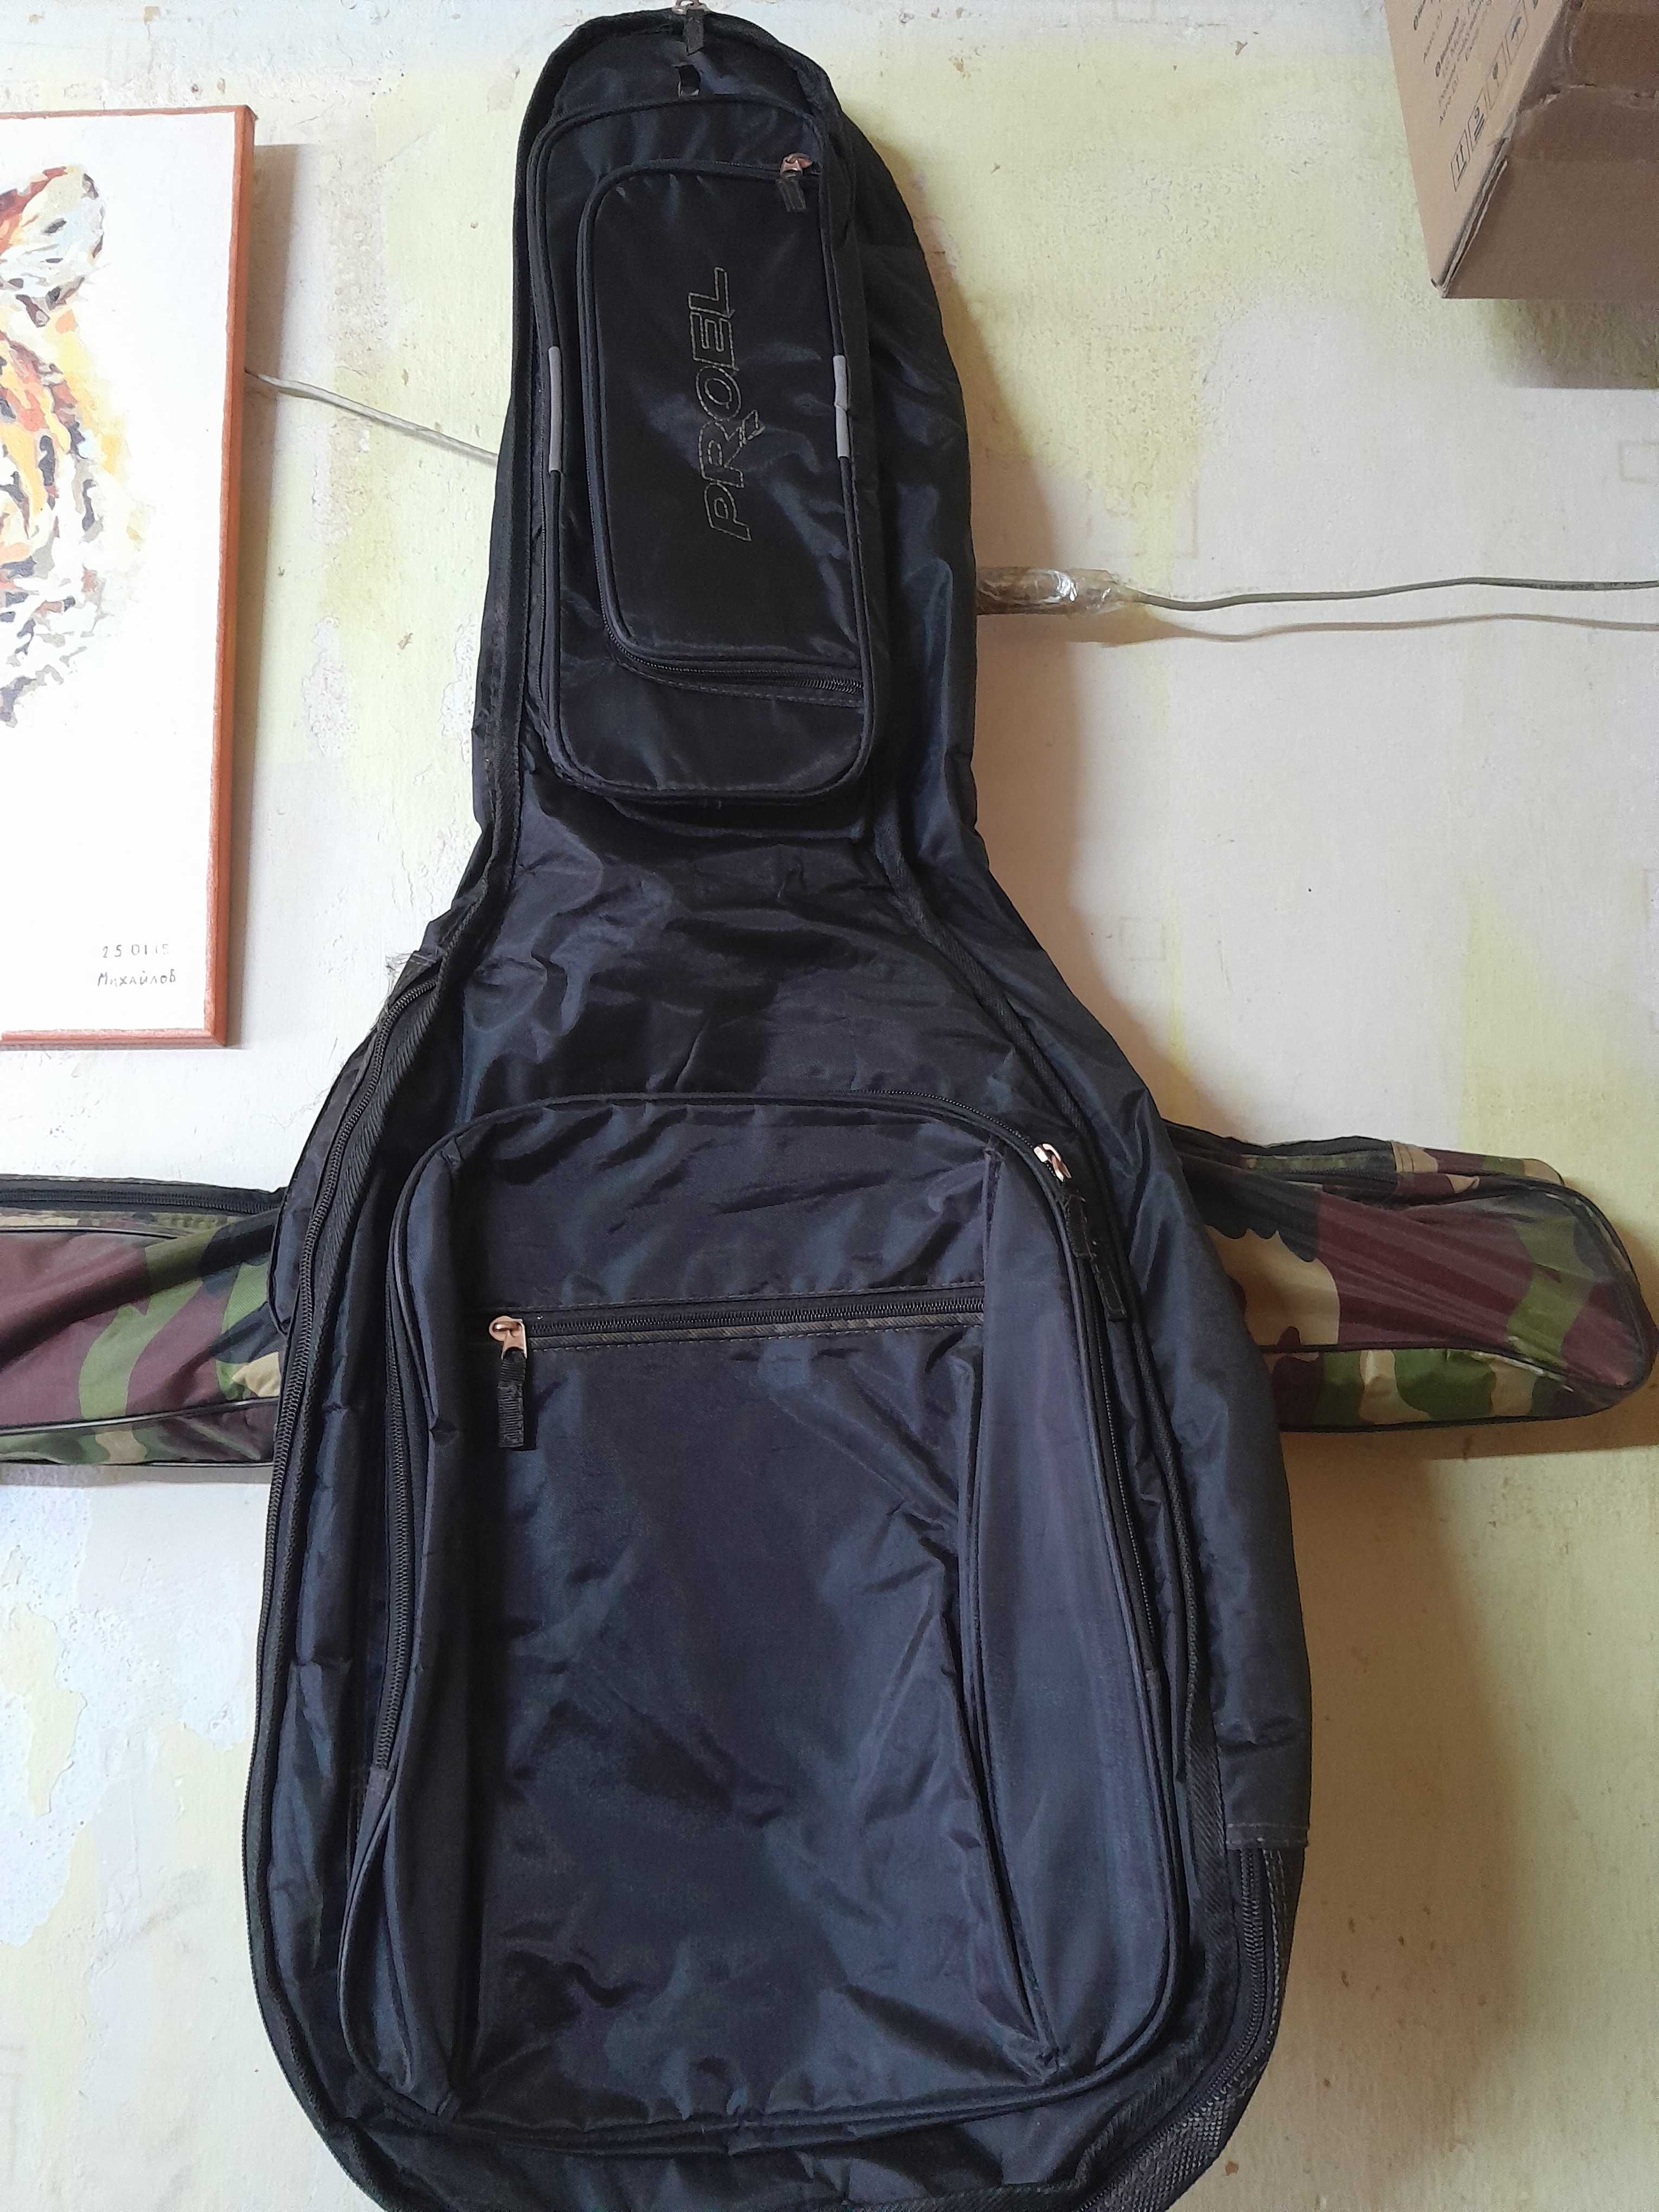 Продаю чехол/рюкзак для гитары в идеальном состоянии